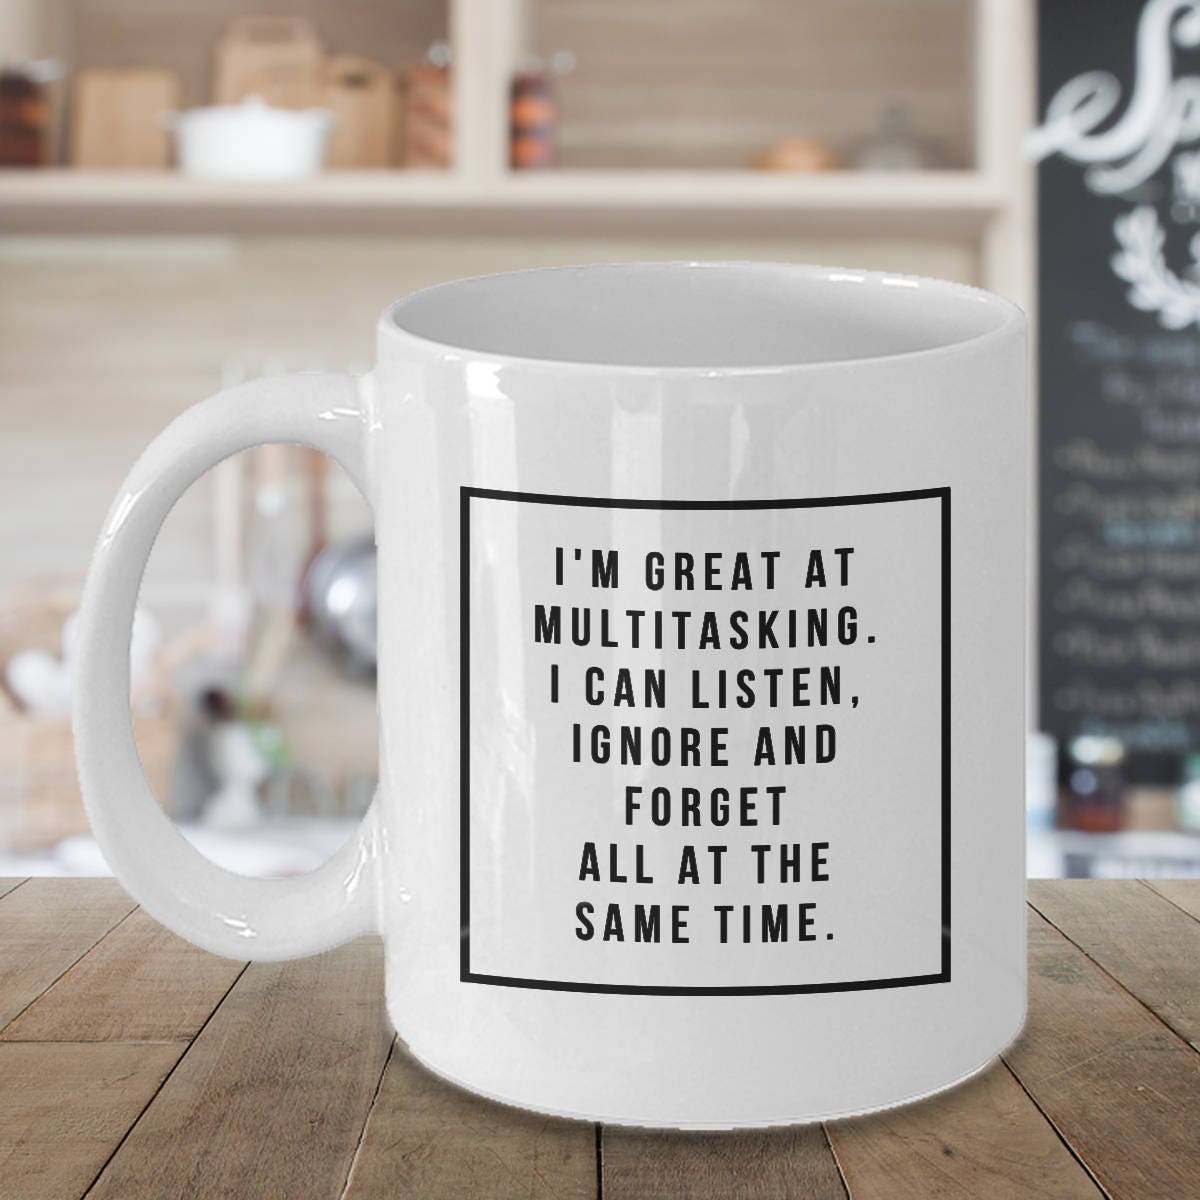 Coffee Mug Funny Sayings Humorous Coffee Mugs Funny Mug Etsy